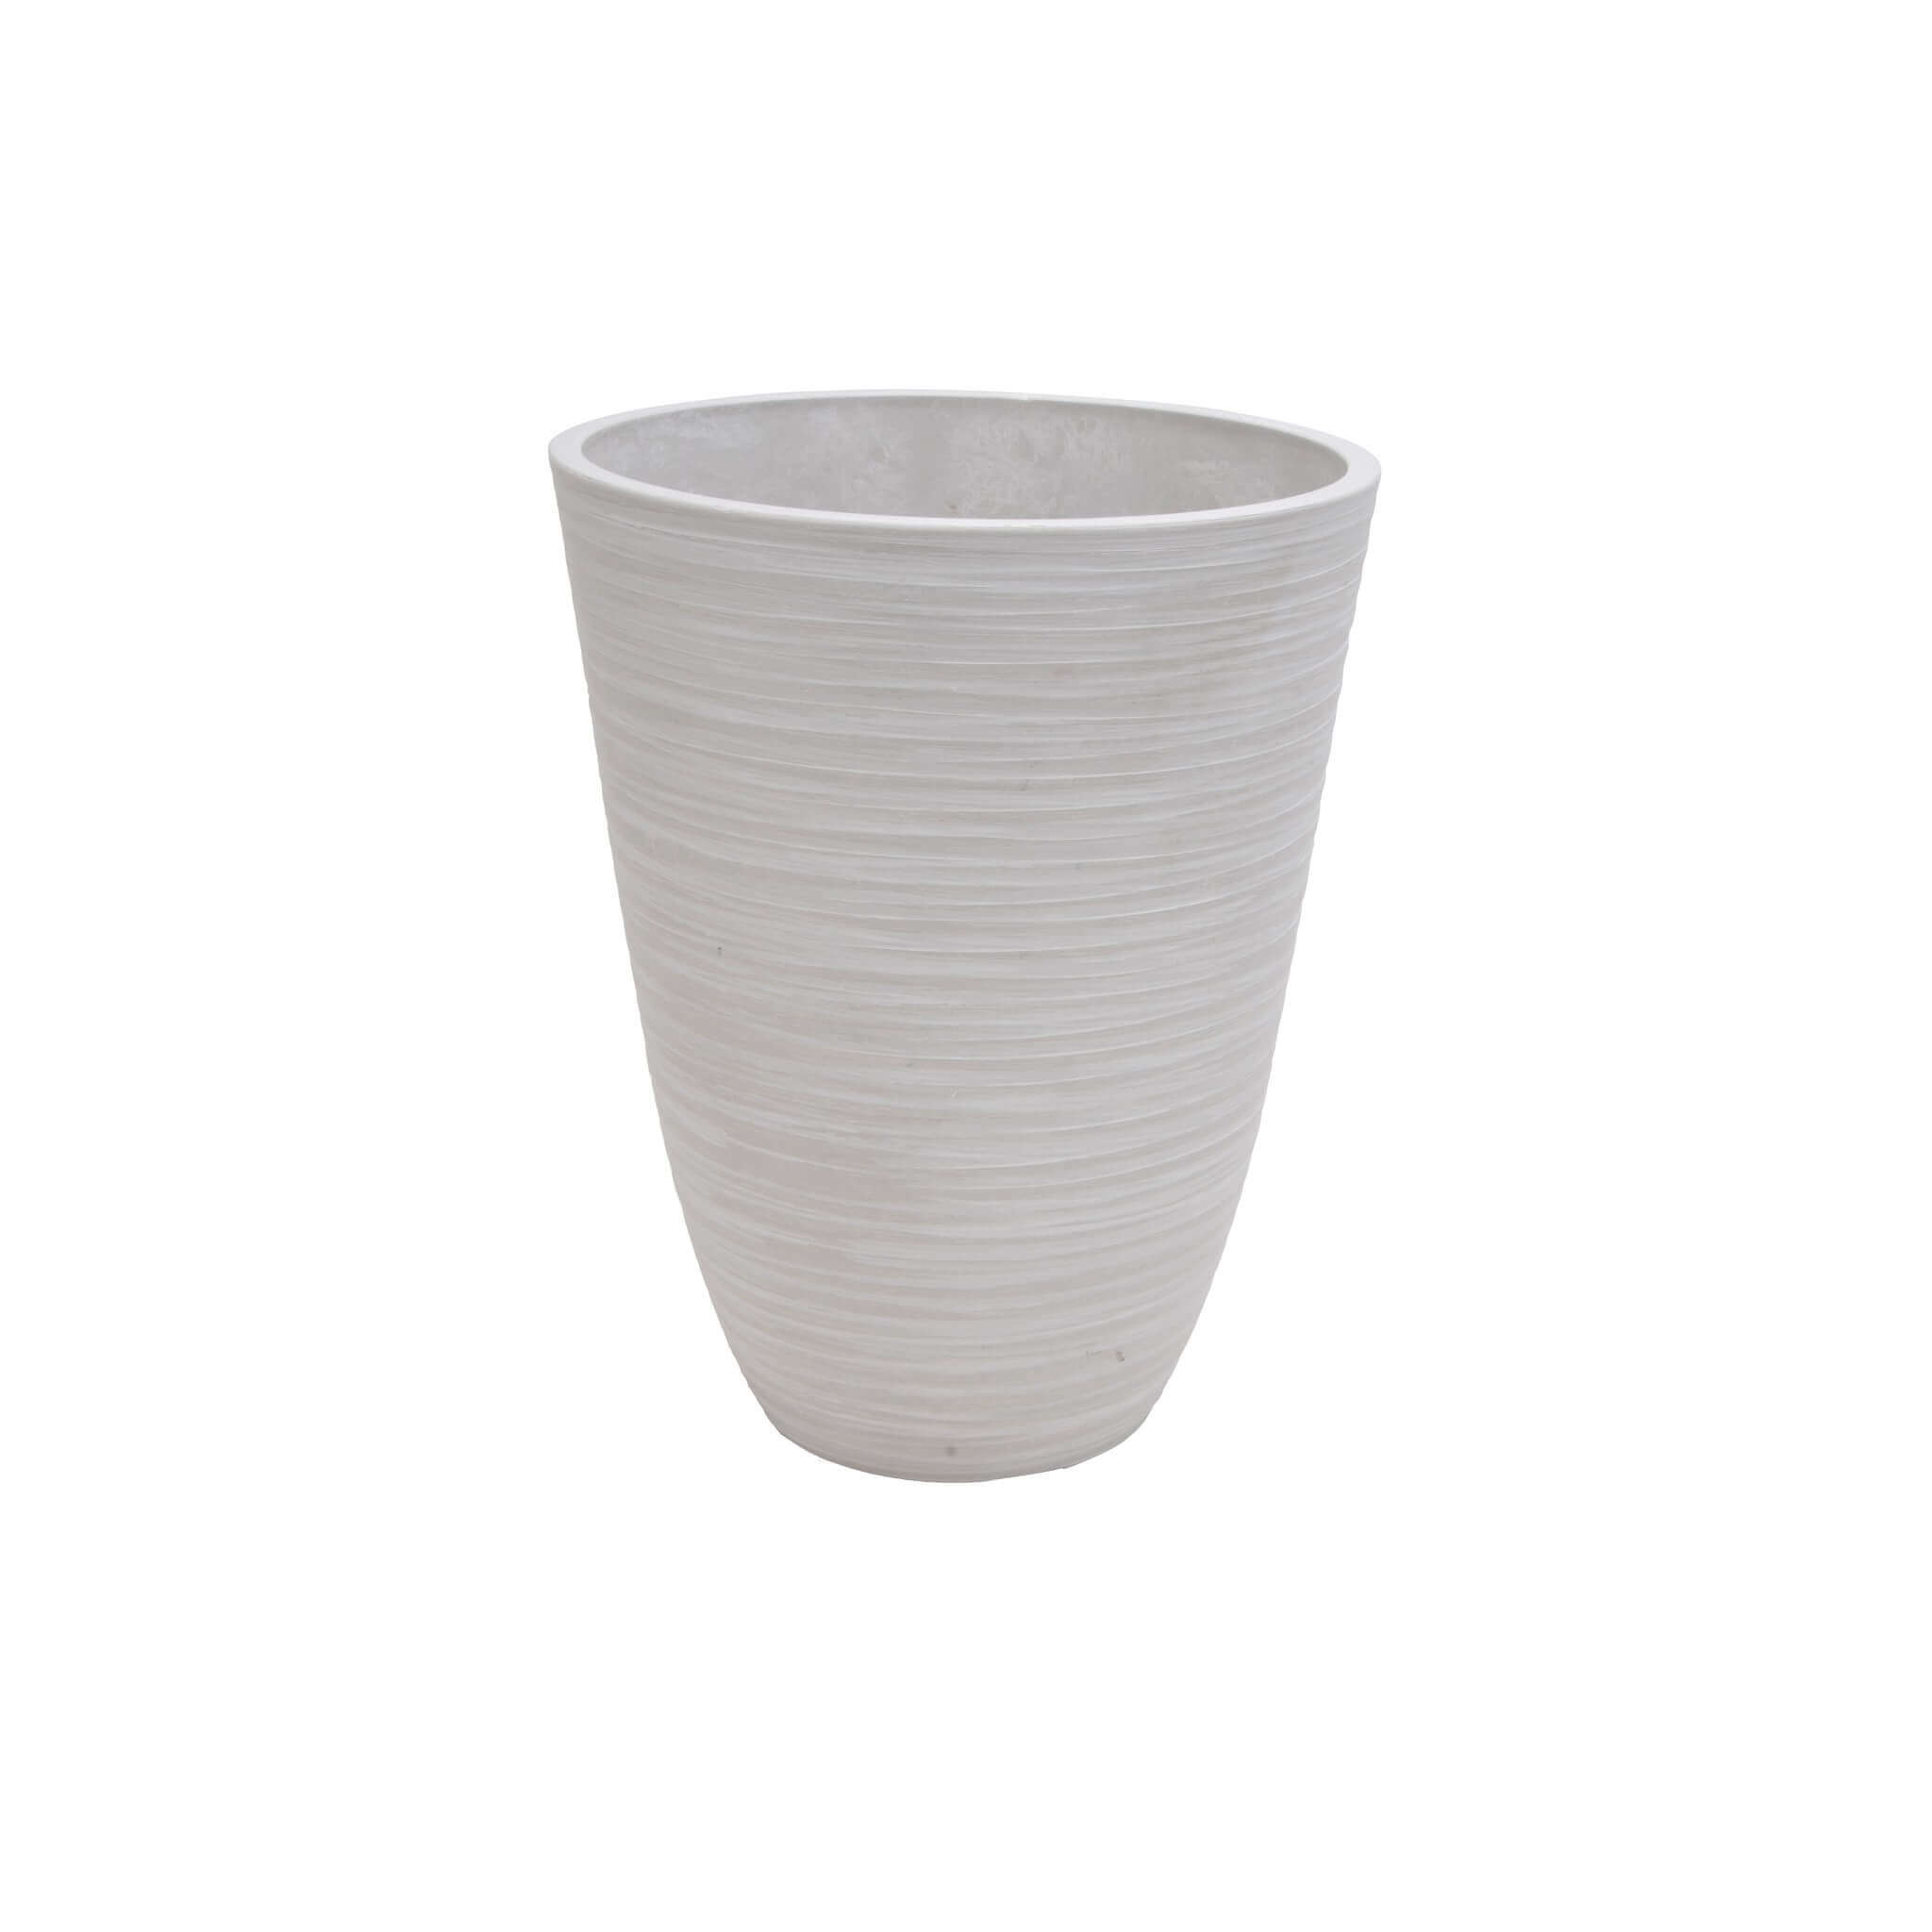 Milani Home Vaso Per Piante Da Esterno Interno Di Design In Fibra Sintetica Resistente Bianco x 46 x cm